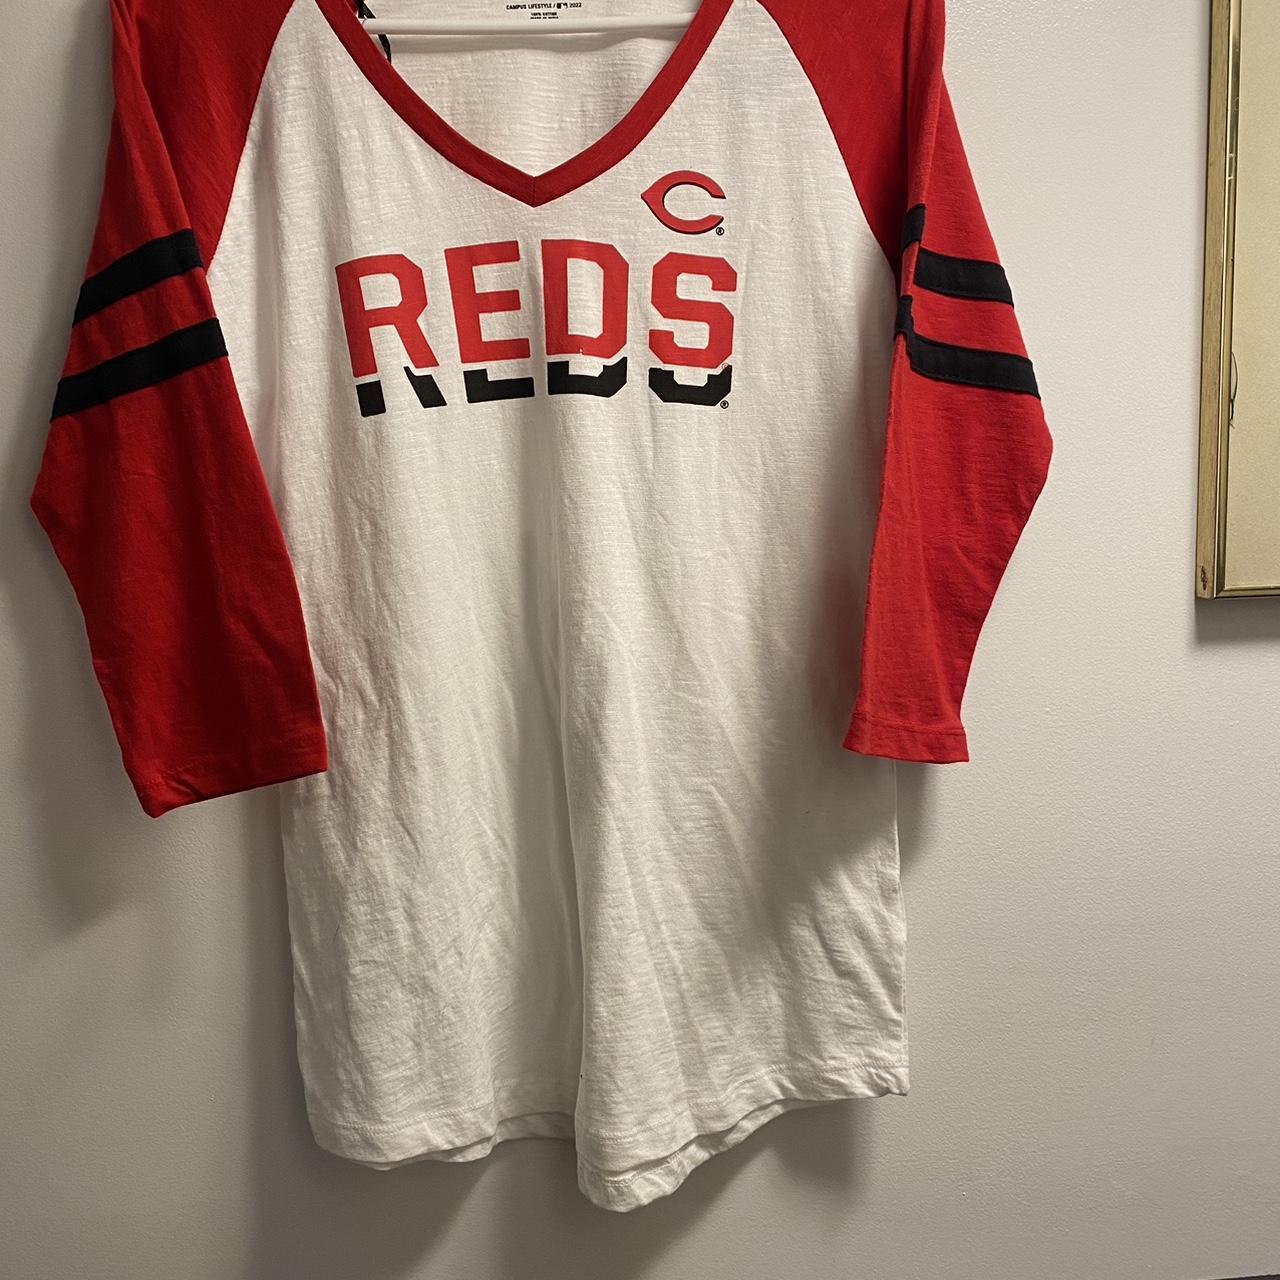 Cincinnati Reds MLB Baseball Jersey Shirt For Fans